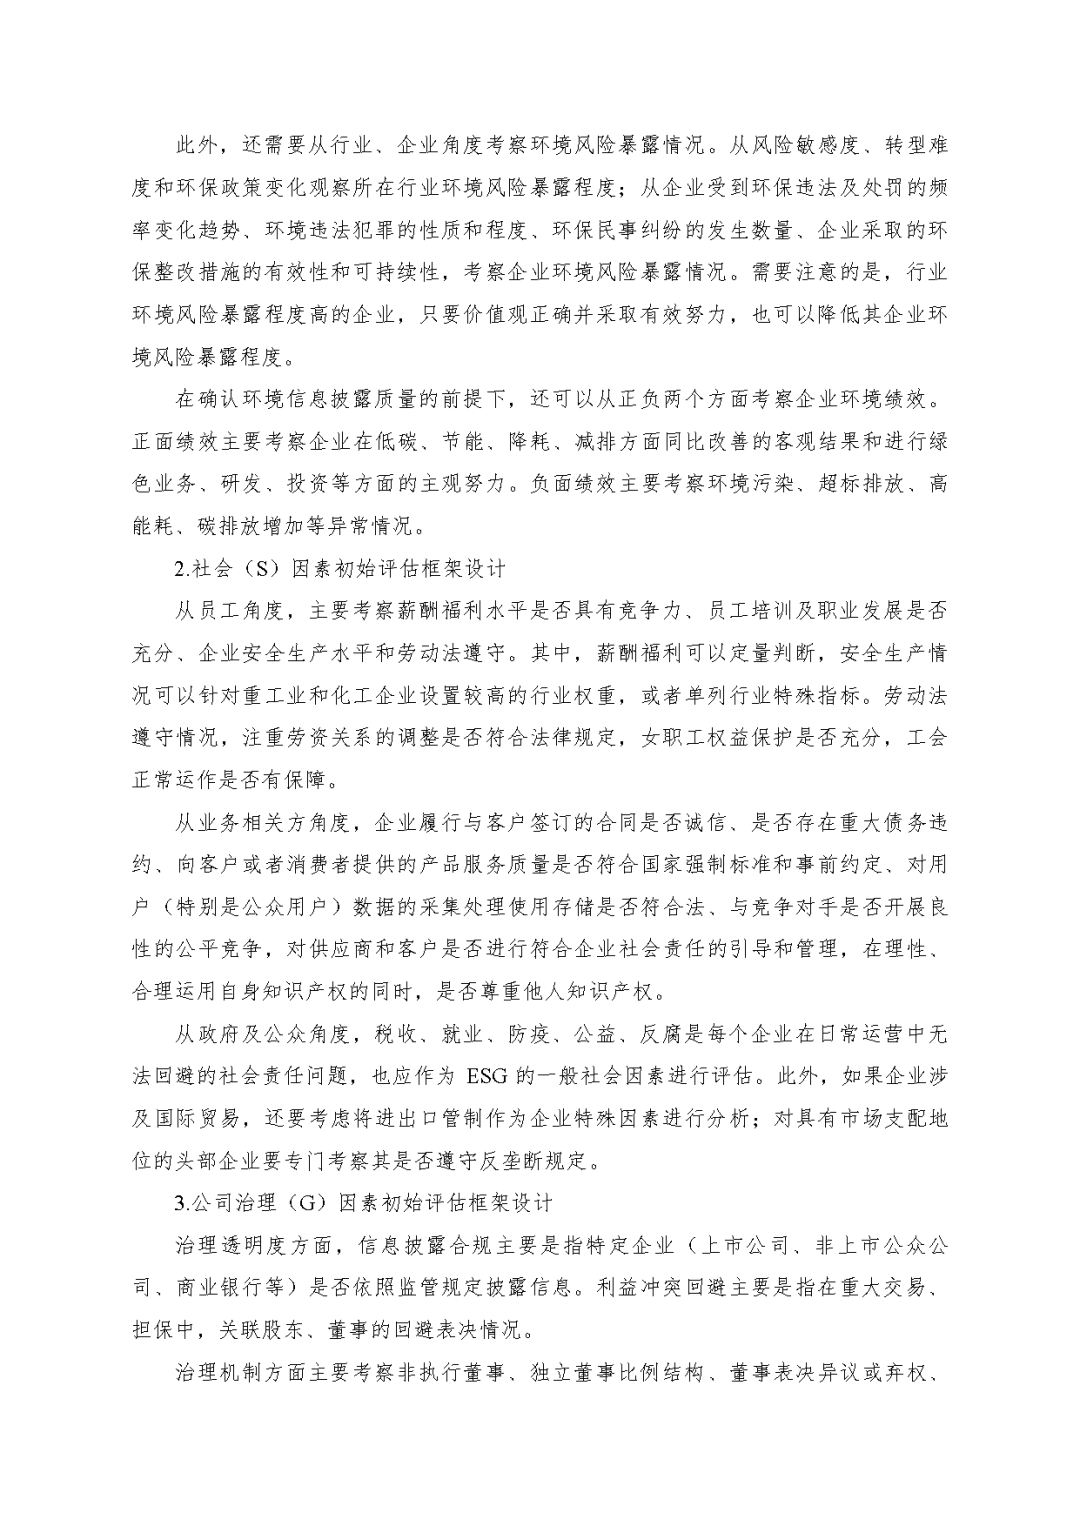 ca88官网评估於隽蓉、蒋骁等在《中国资产评估》宣布专业文章《ESG因素对市场法修正影响的初探》